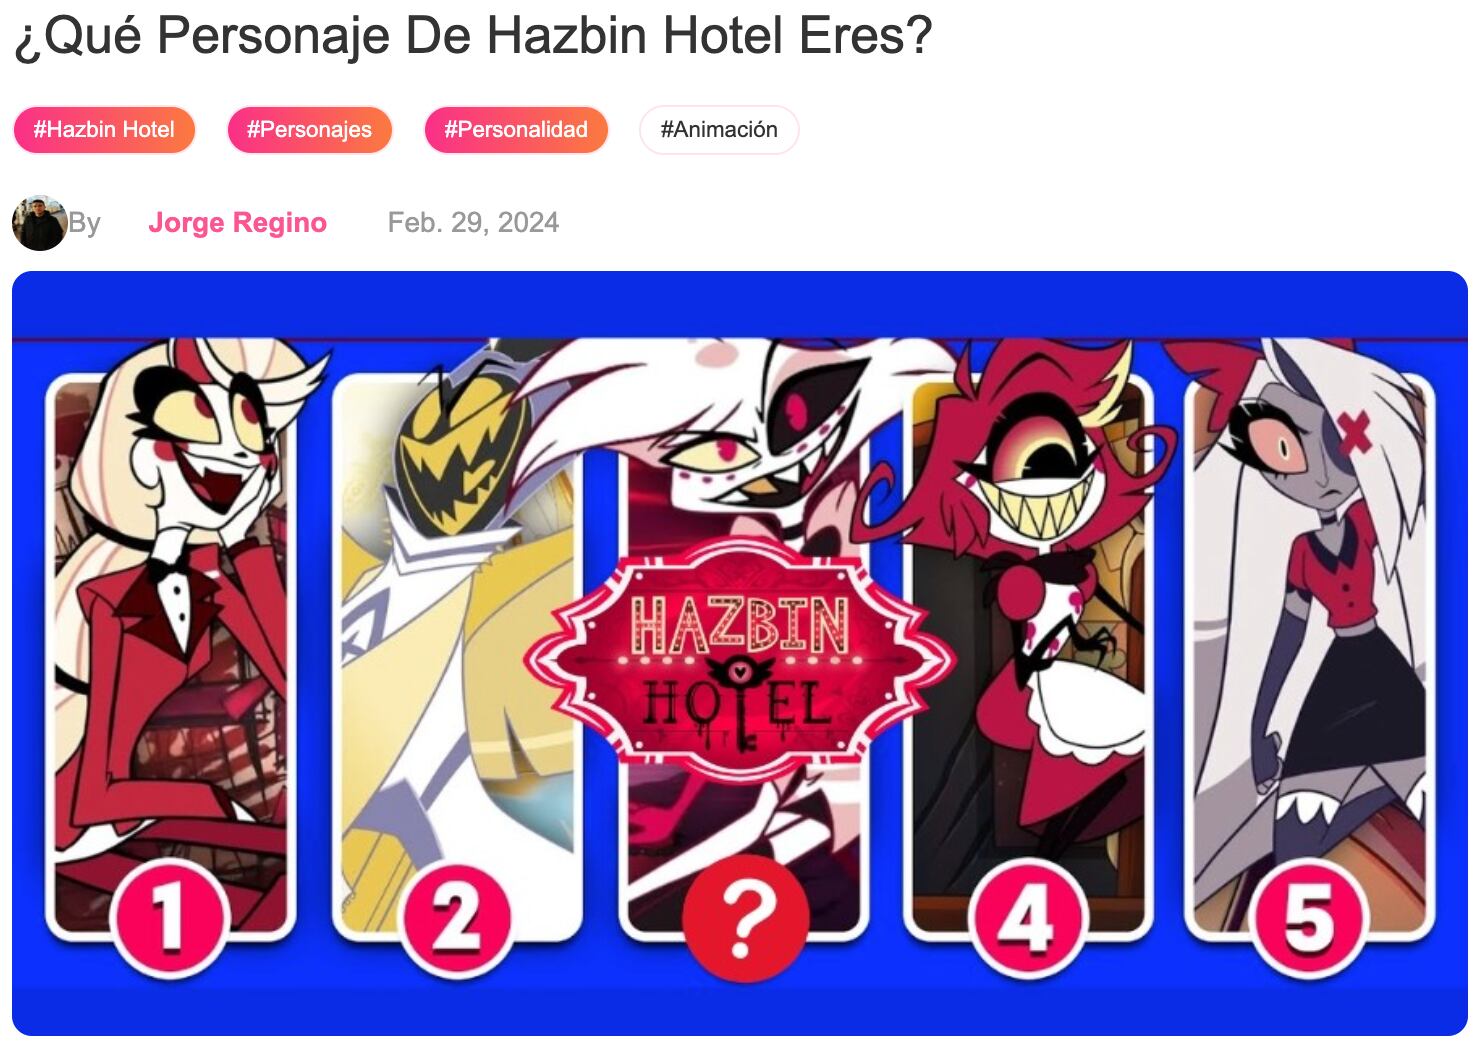 El test de 6 preguntas que te dice qué personaje de Hazbin Hotel eres